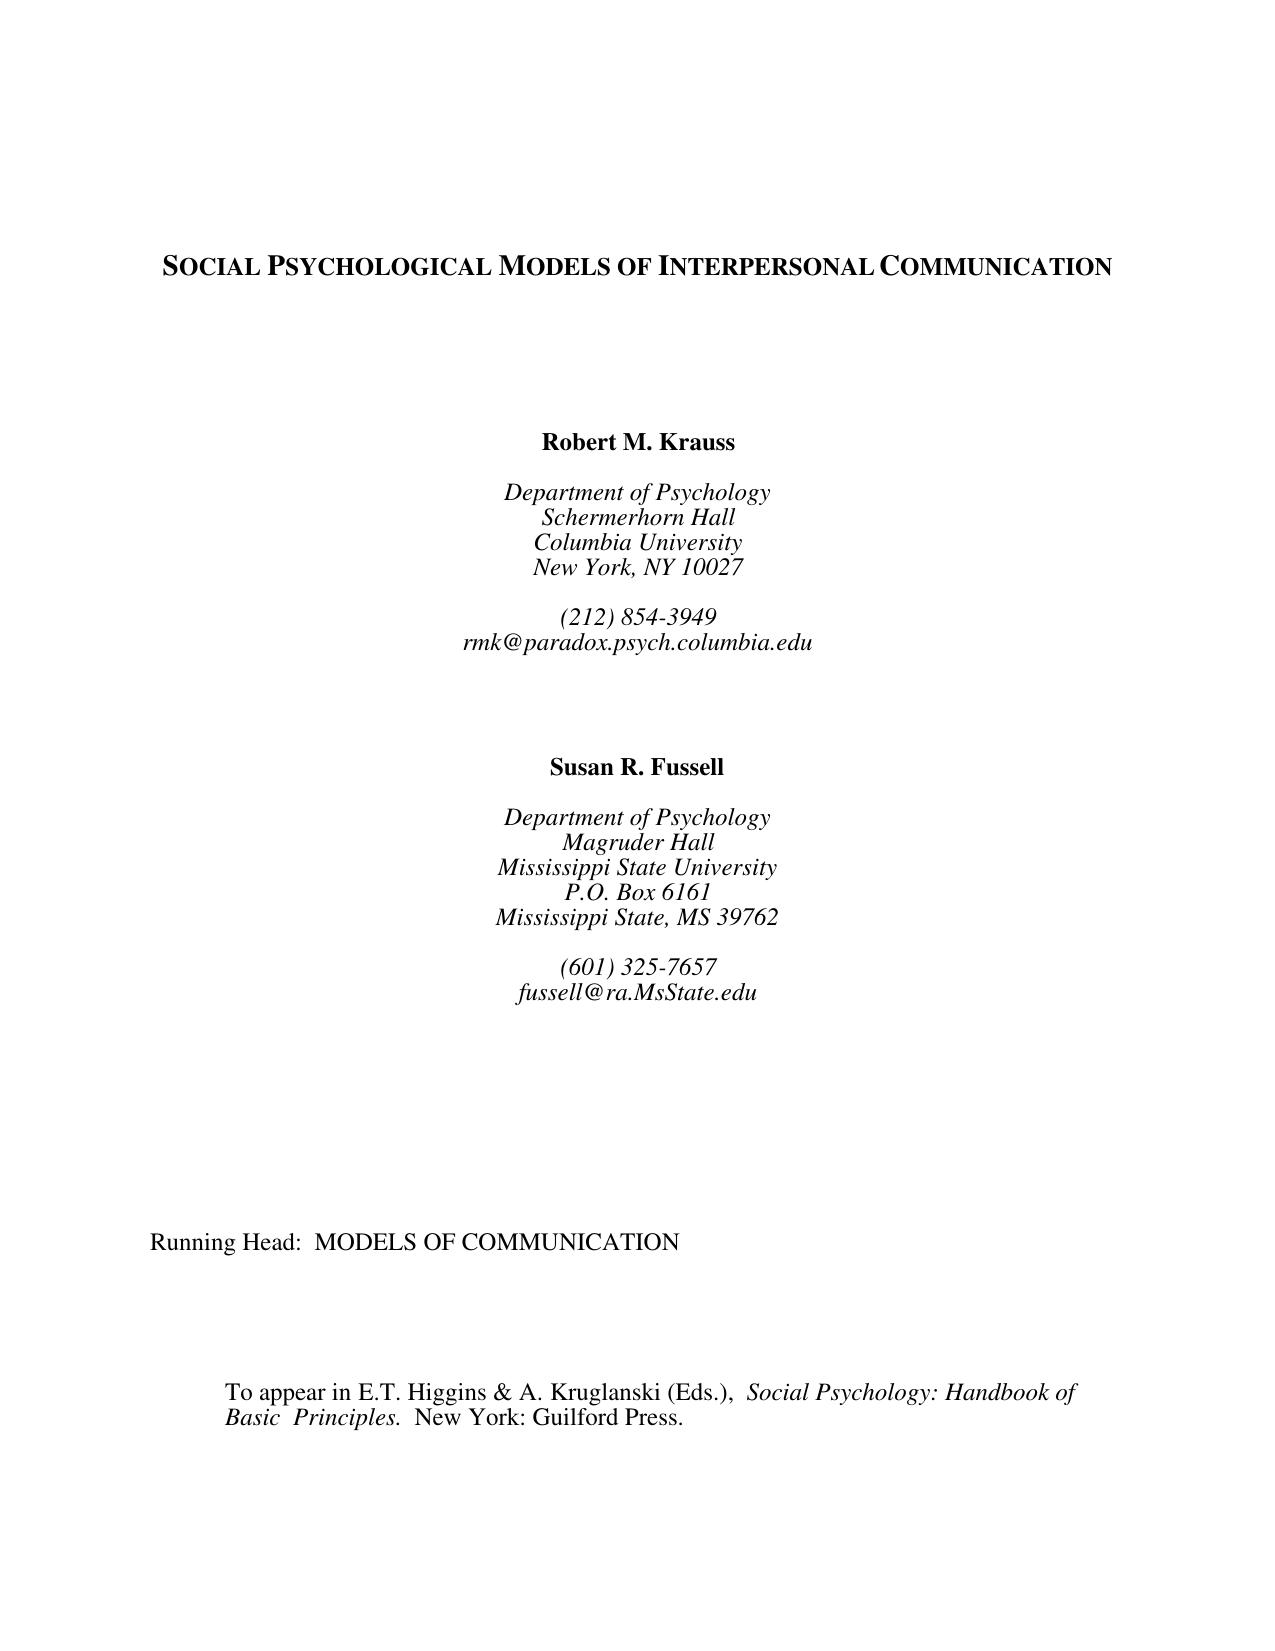 [Krauss] Social Psychological Models of Interperso(BookZZ.org)